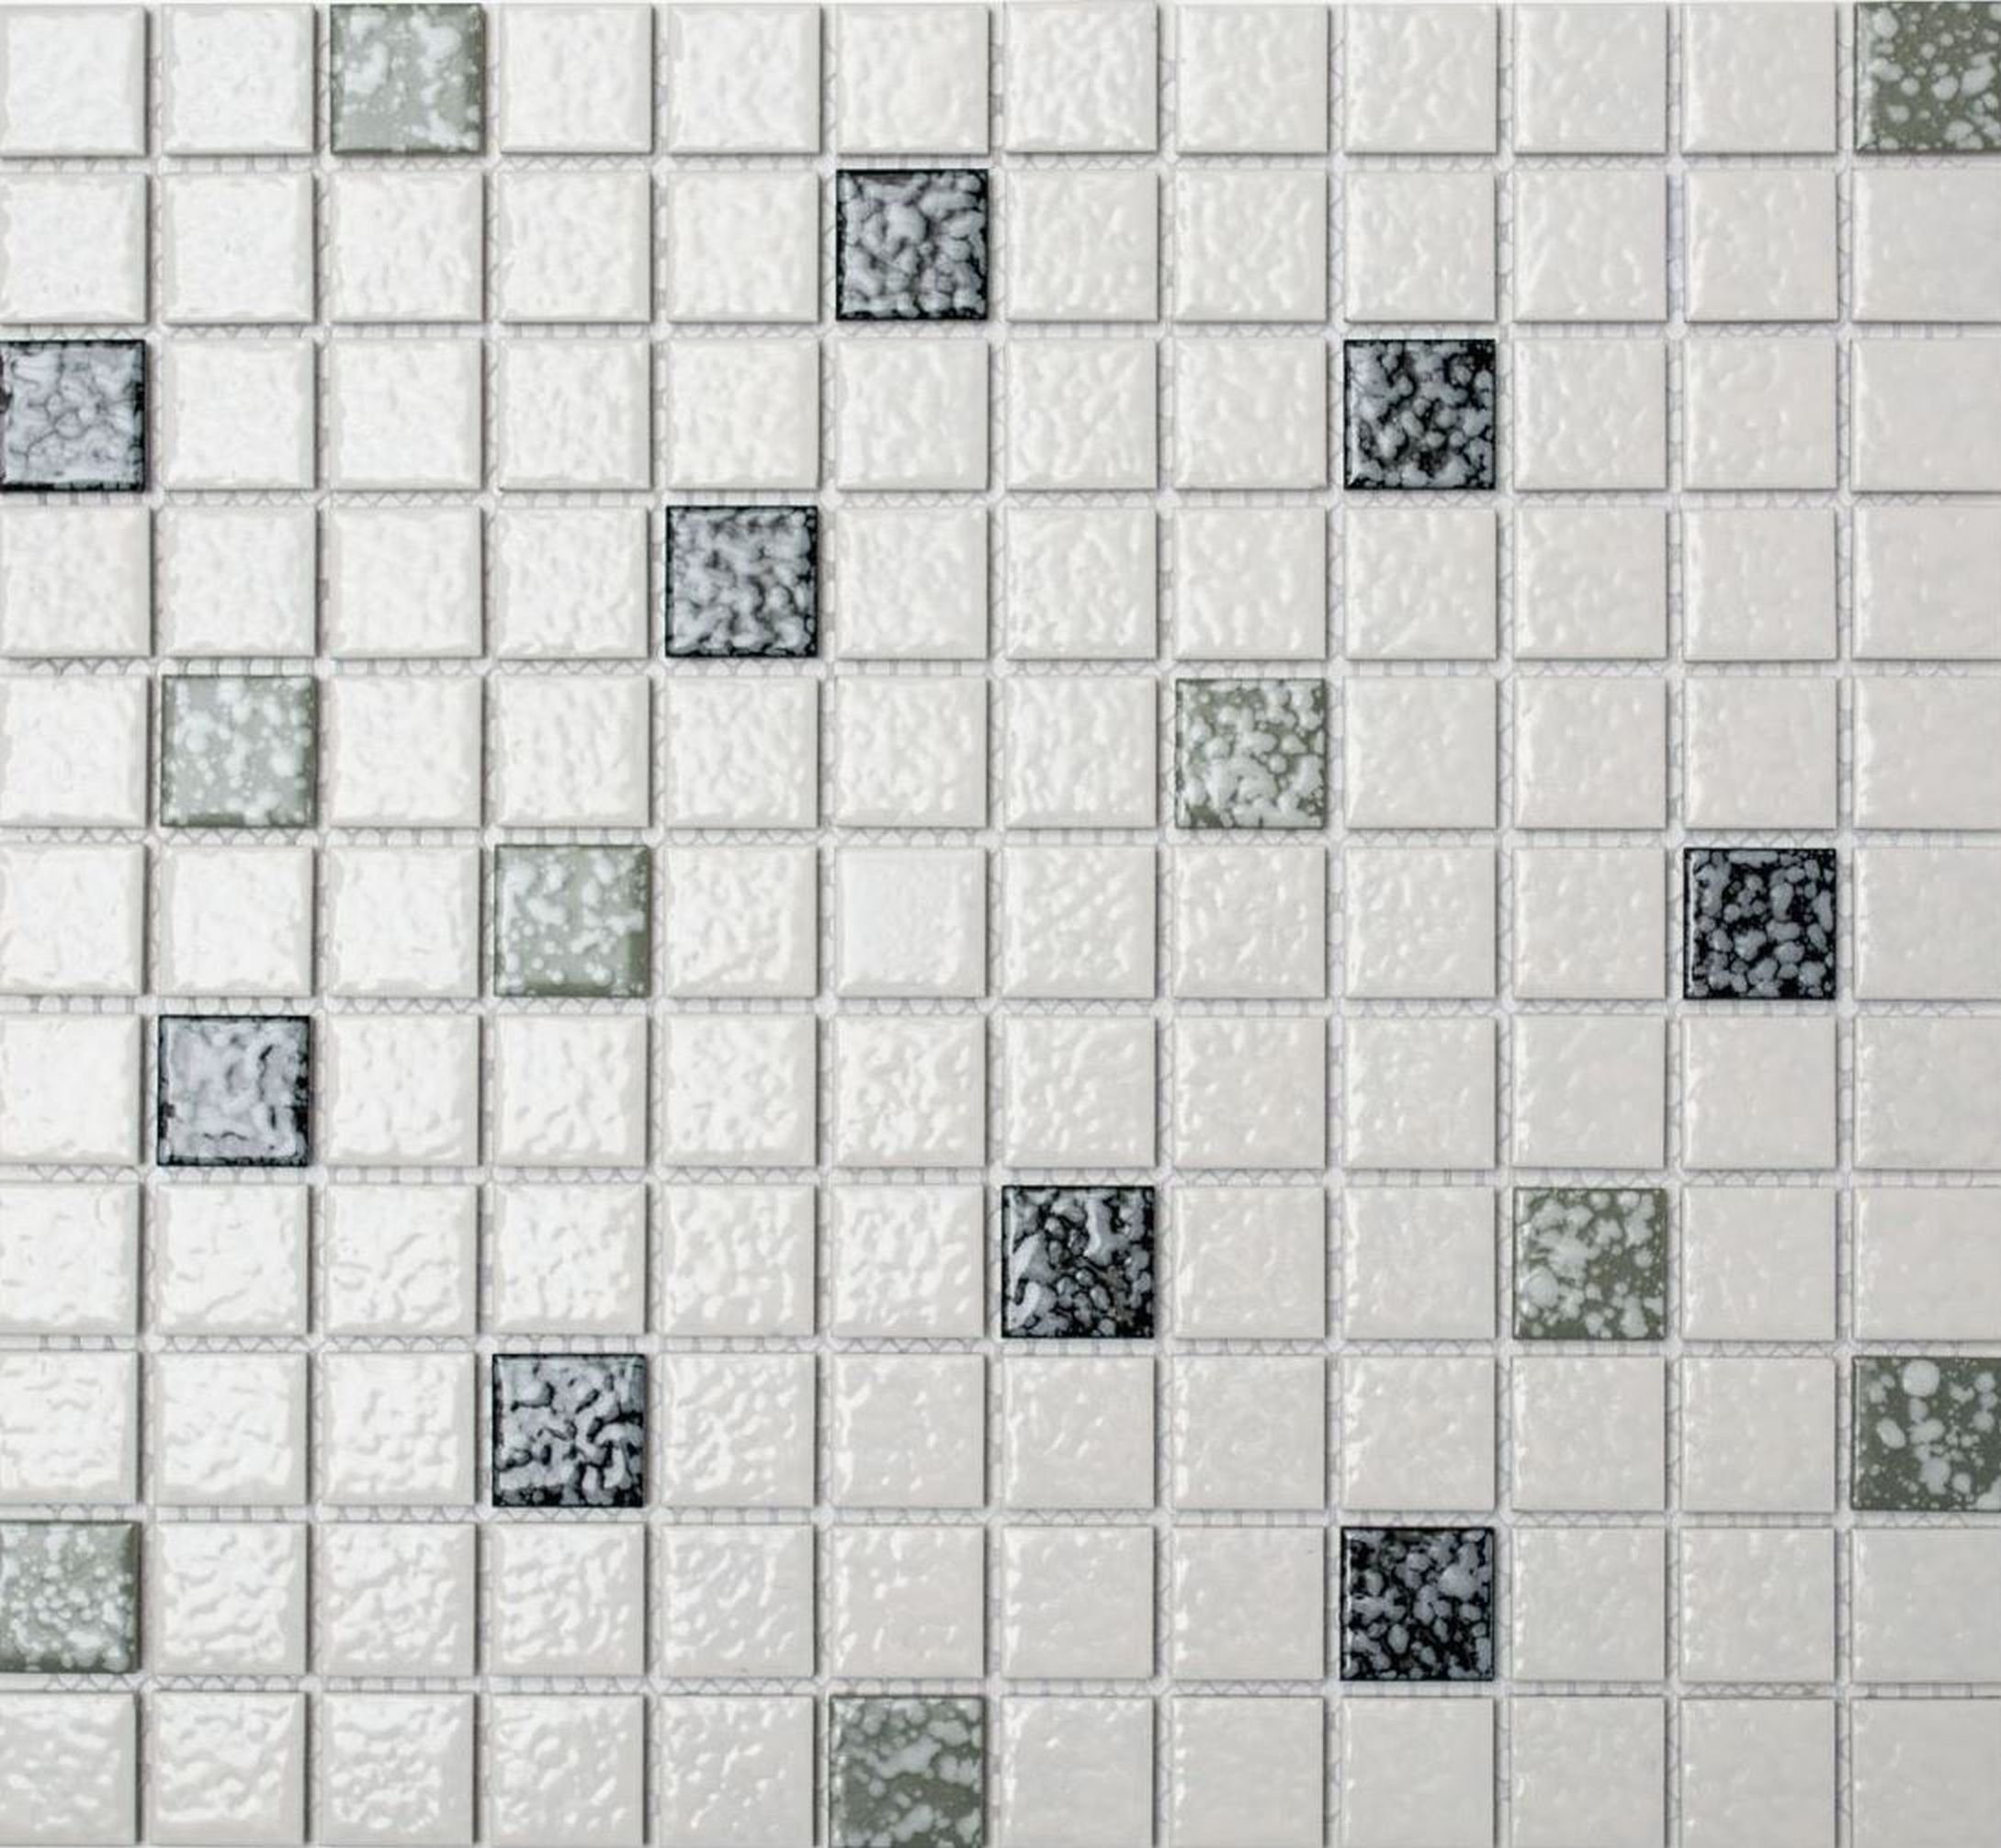 Mosani Mosaikfliesen Keramik Mosaik weiß schwarz grau struktur Mosaikfliese  Bad